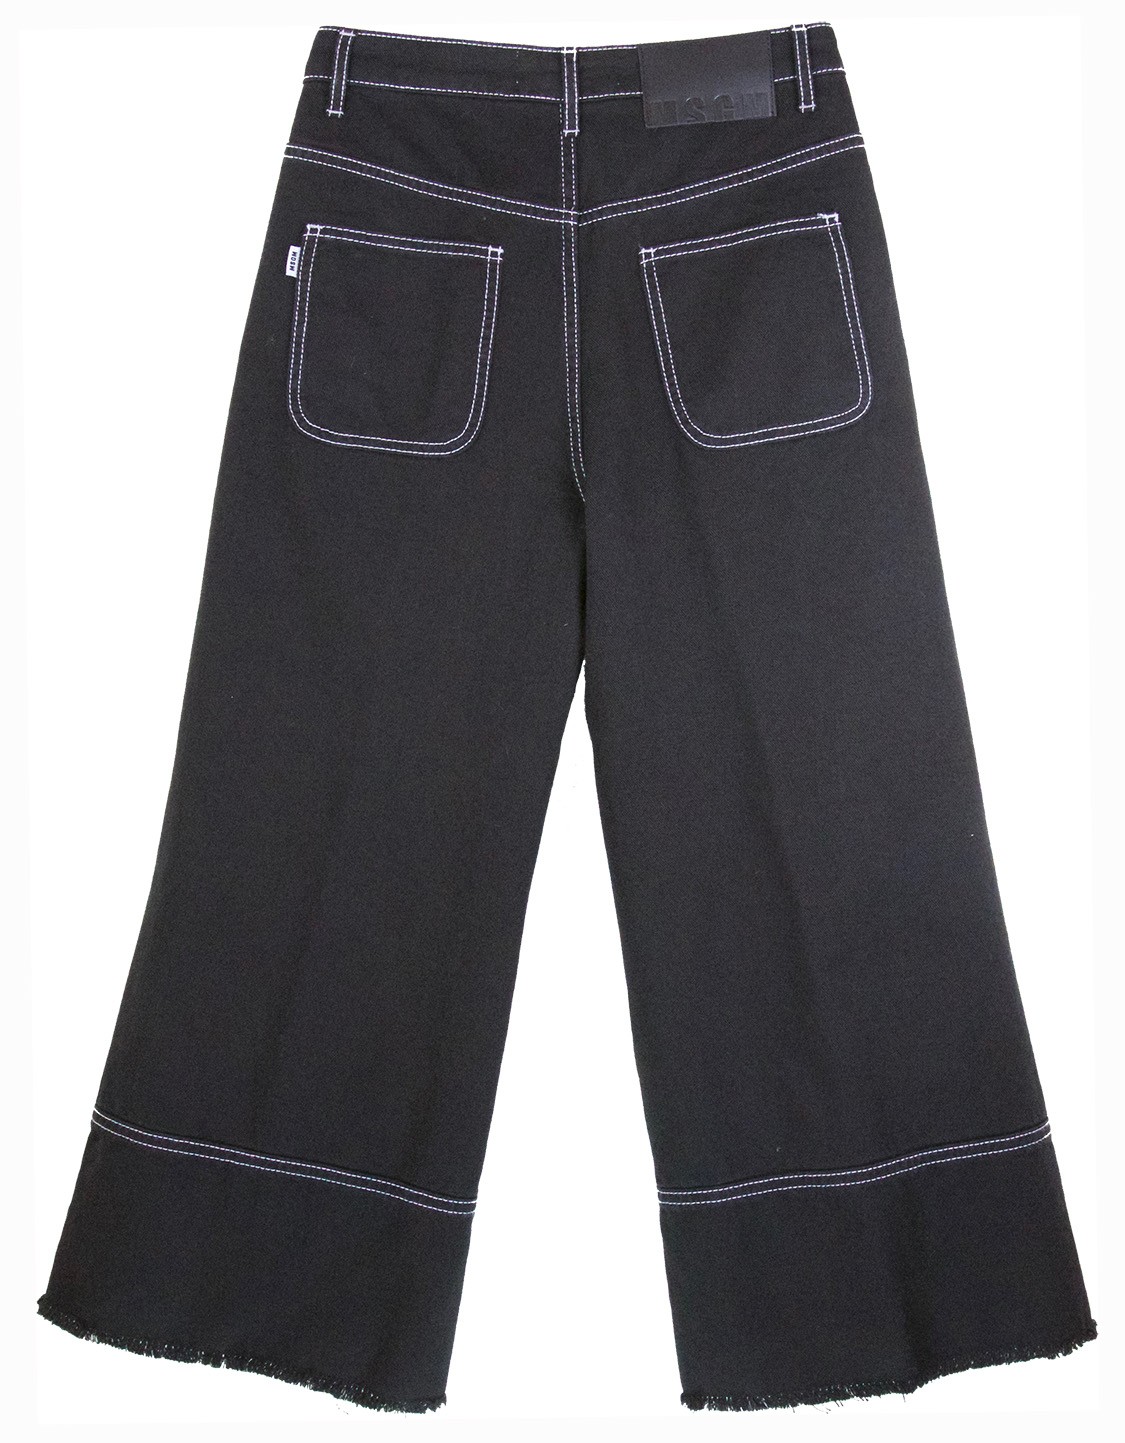 shop MSGM  Pantaloni: Pantaloni MSGM, tipo jeans, nero, cuciture bianche a contrasto, quattro tasche, chiusura con bottoni e zip, sfrangiato, lunghezza alla caviglia.

Composizione: 100% cotone. number 1151